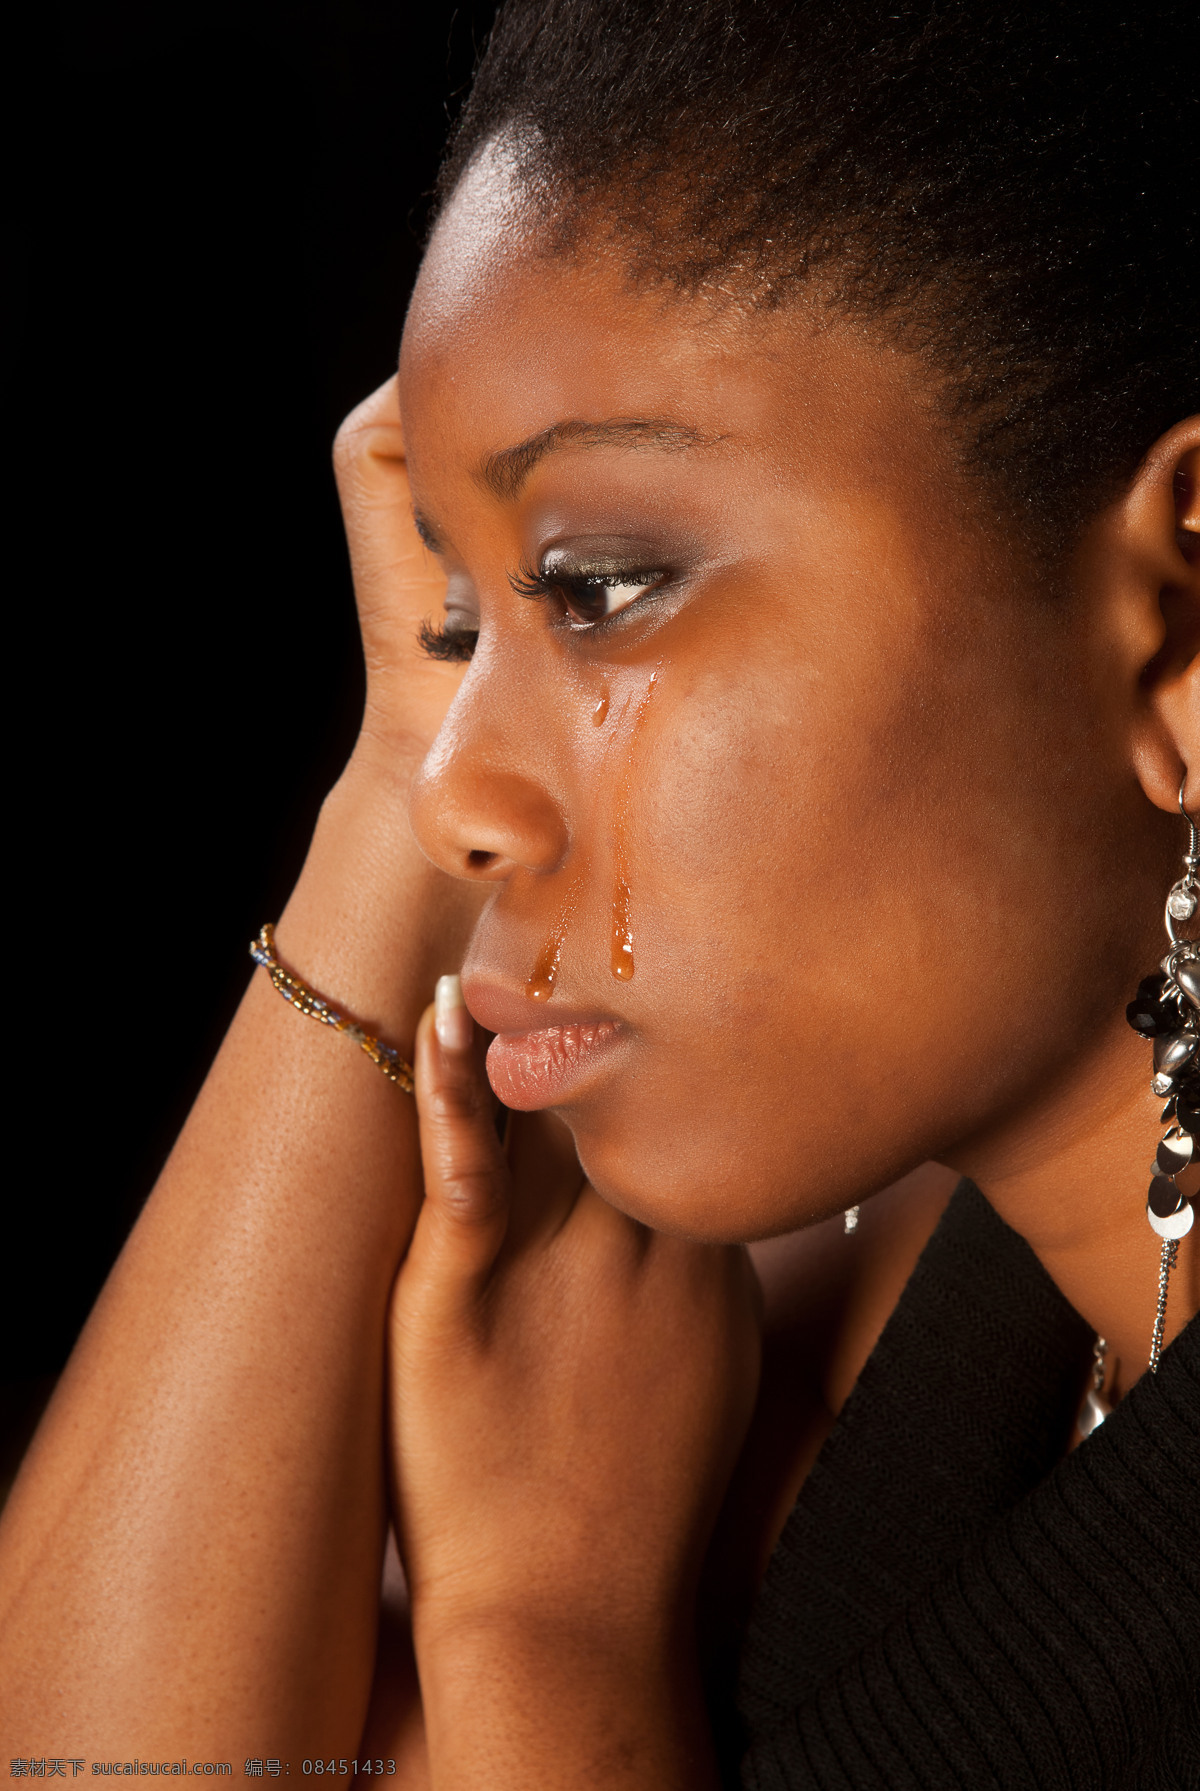 哭泣 黑人 女性 伤心的女人 哭泣的女人 流泪 流眼泪 泪流满面 外国美女 哭泣的美女 外国女性 外国女人 美女图片 人物图片